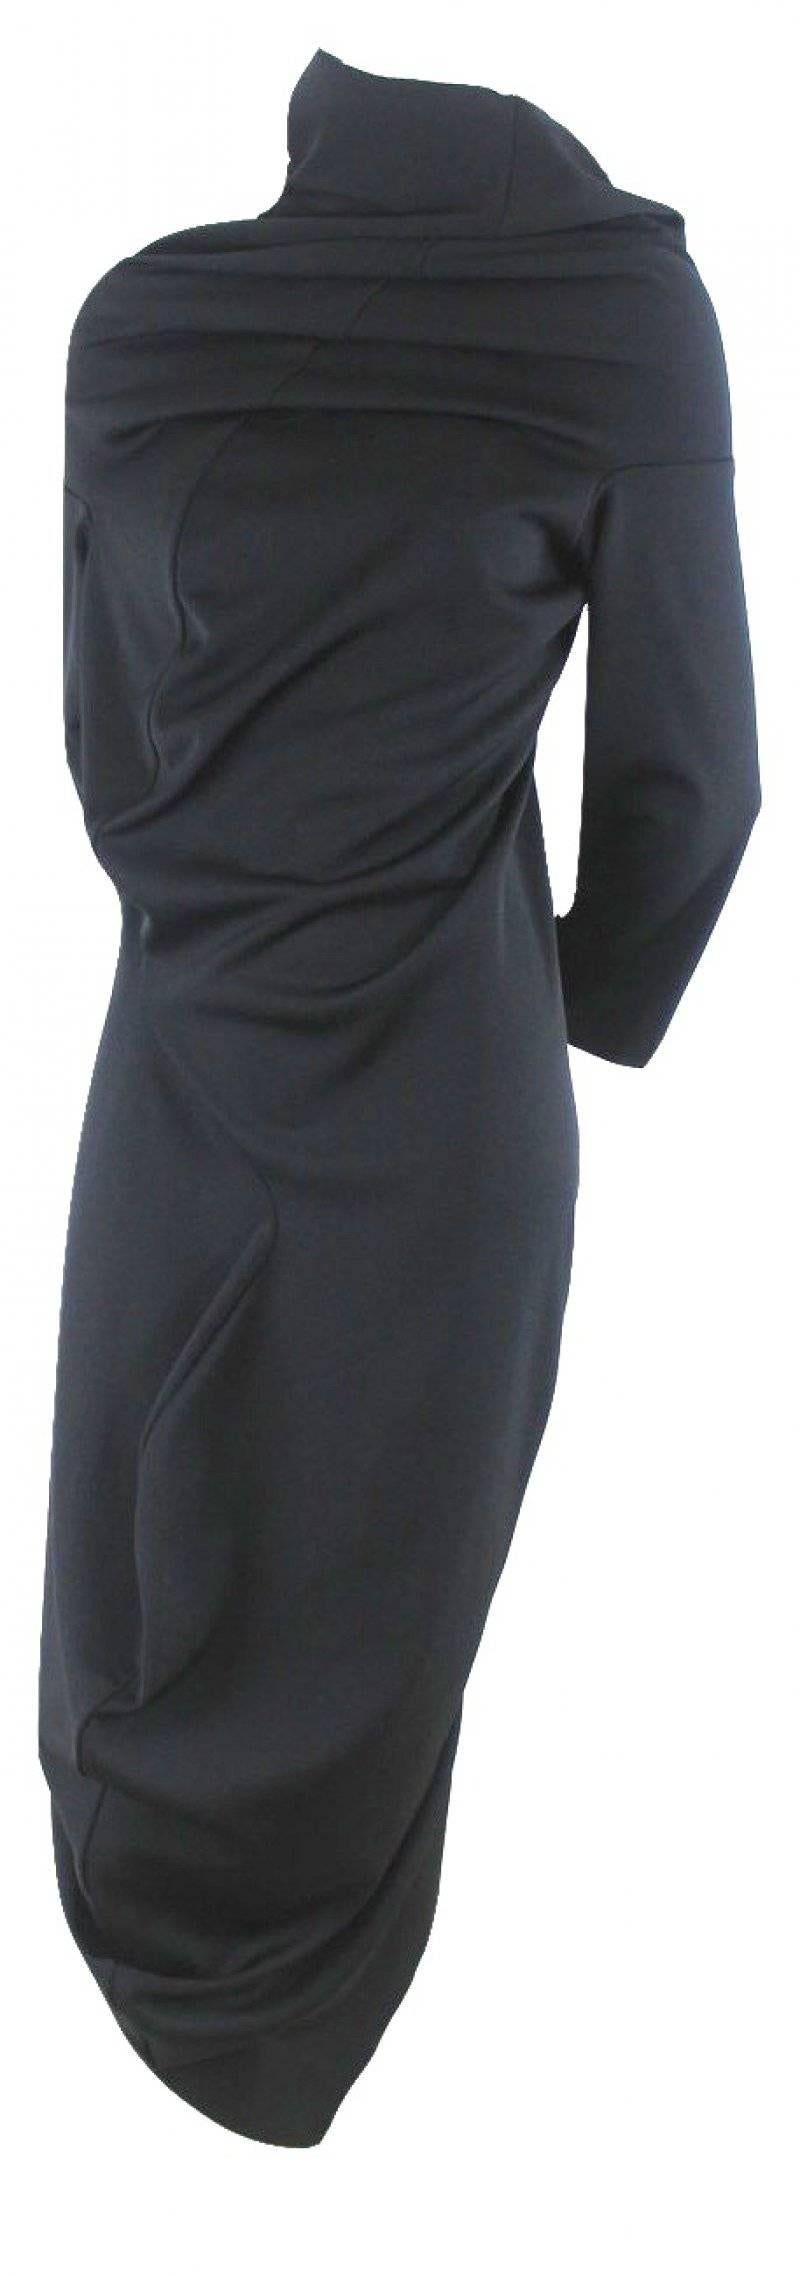 Comme des Garcons 2011 Collection S-Curve Dress 2